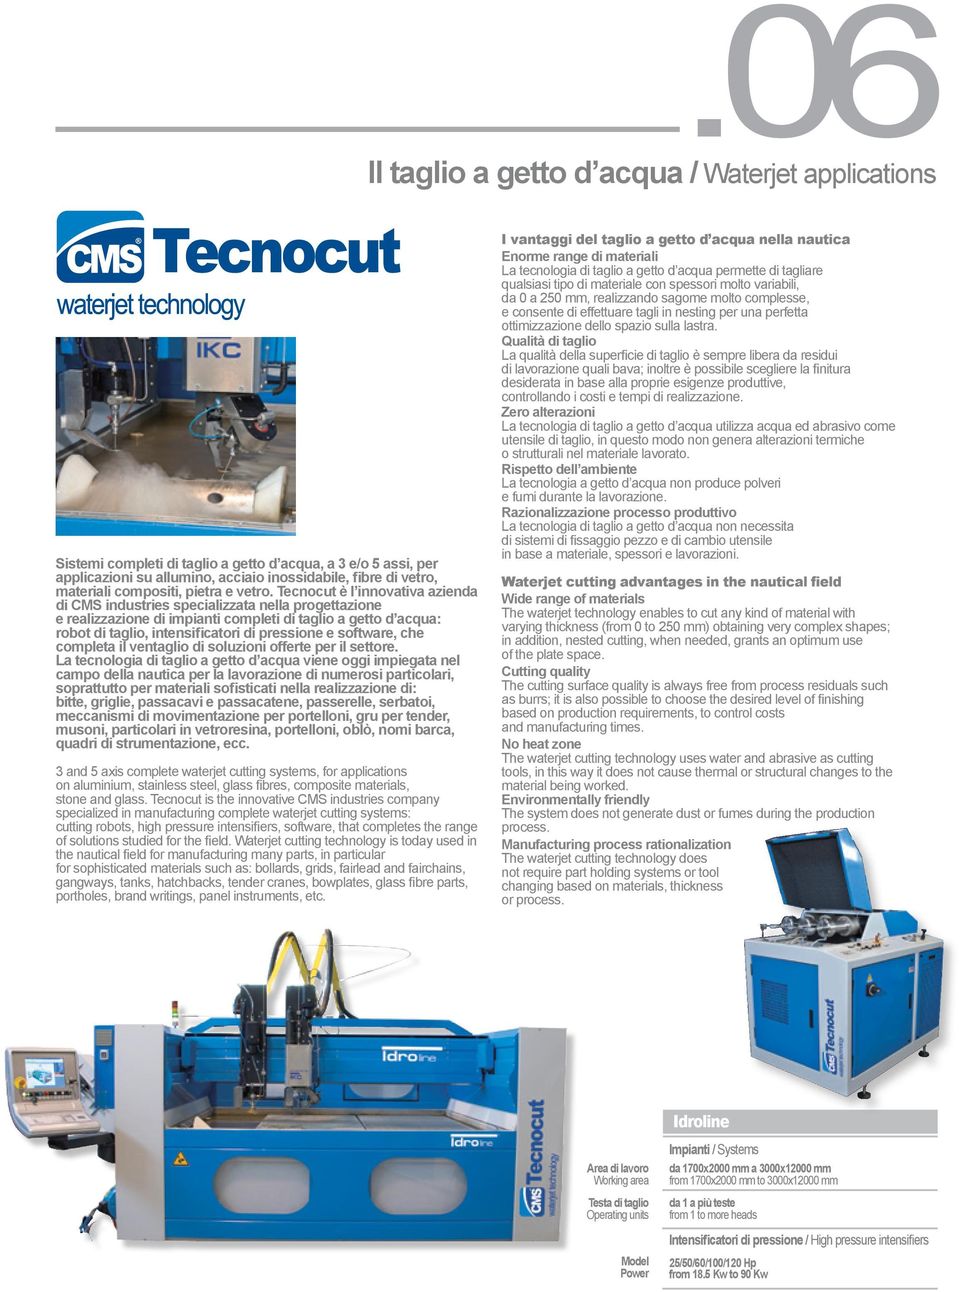 Tecnocut è l innovativa azienda di CMS industries specializzata nella progettazione e realizzazione di impianti completi di taglio a getto d acqua: robot di taglio, intensificatori di pressione e